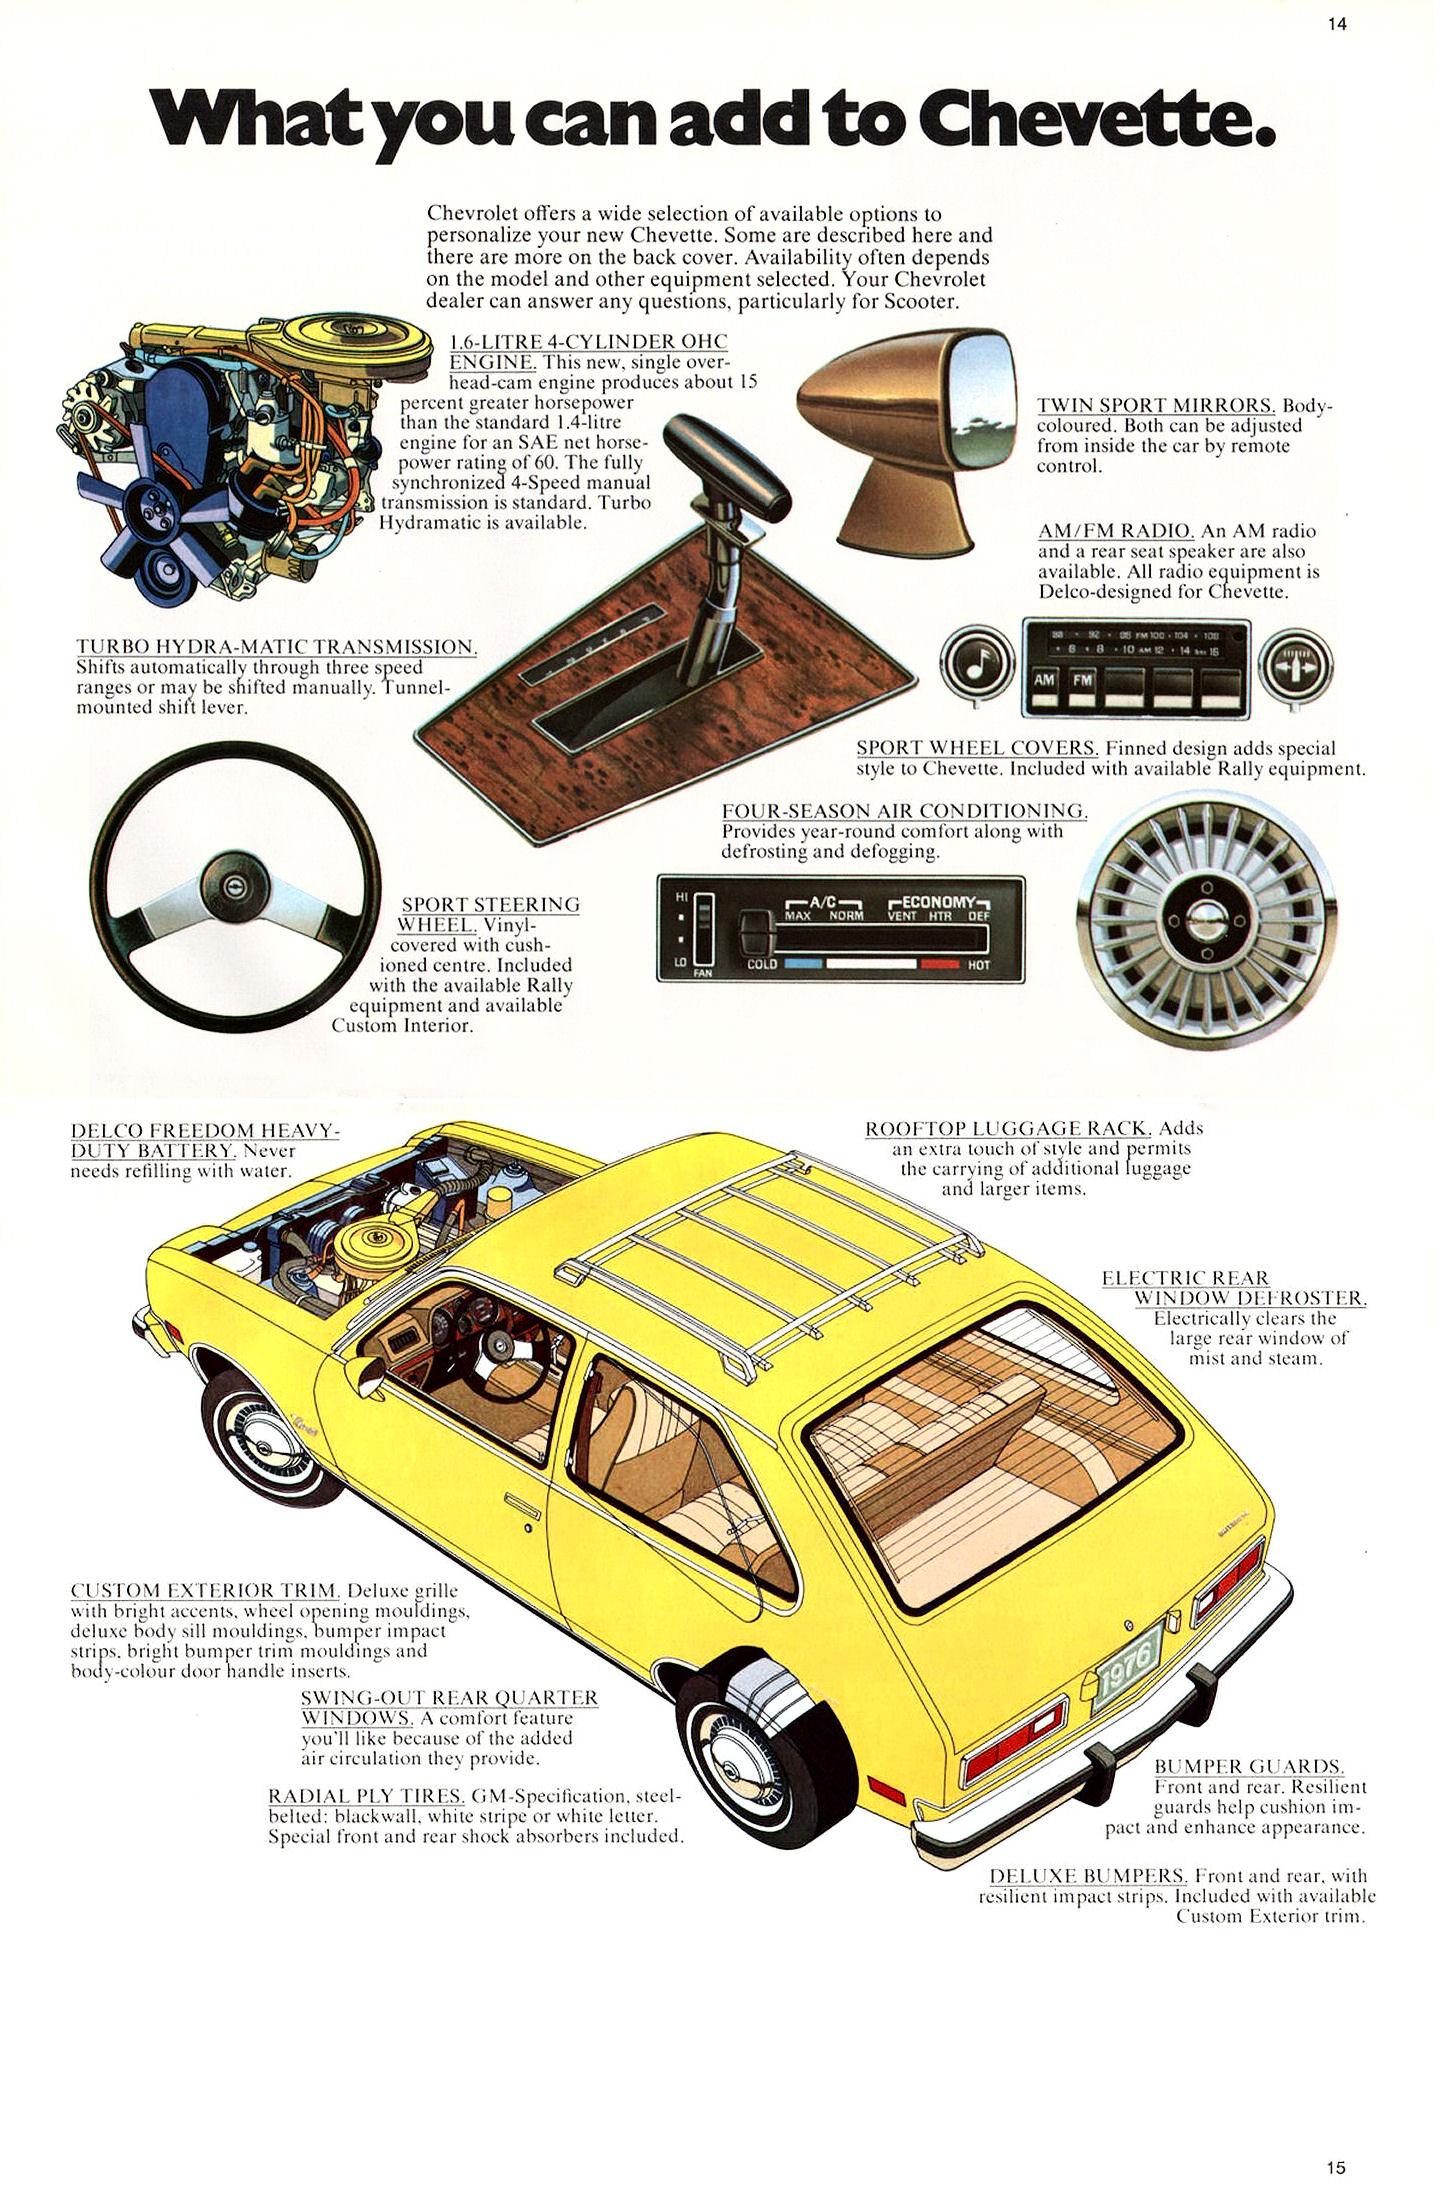 1976_Chevrolet_Chevette_Cdn-14-15